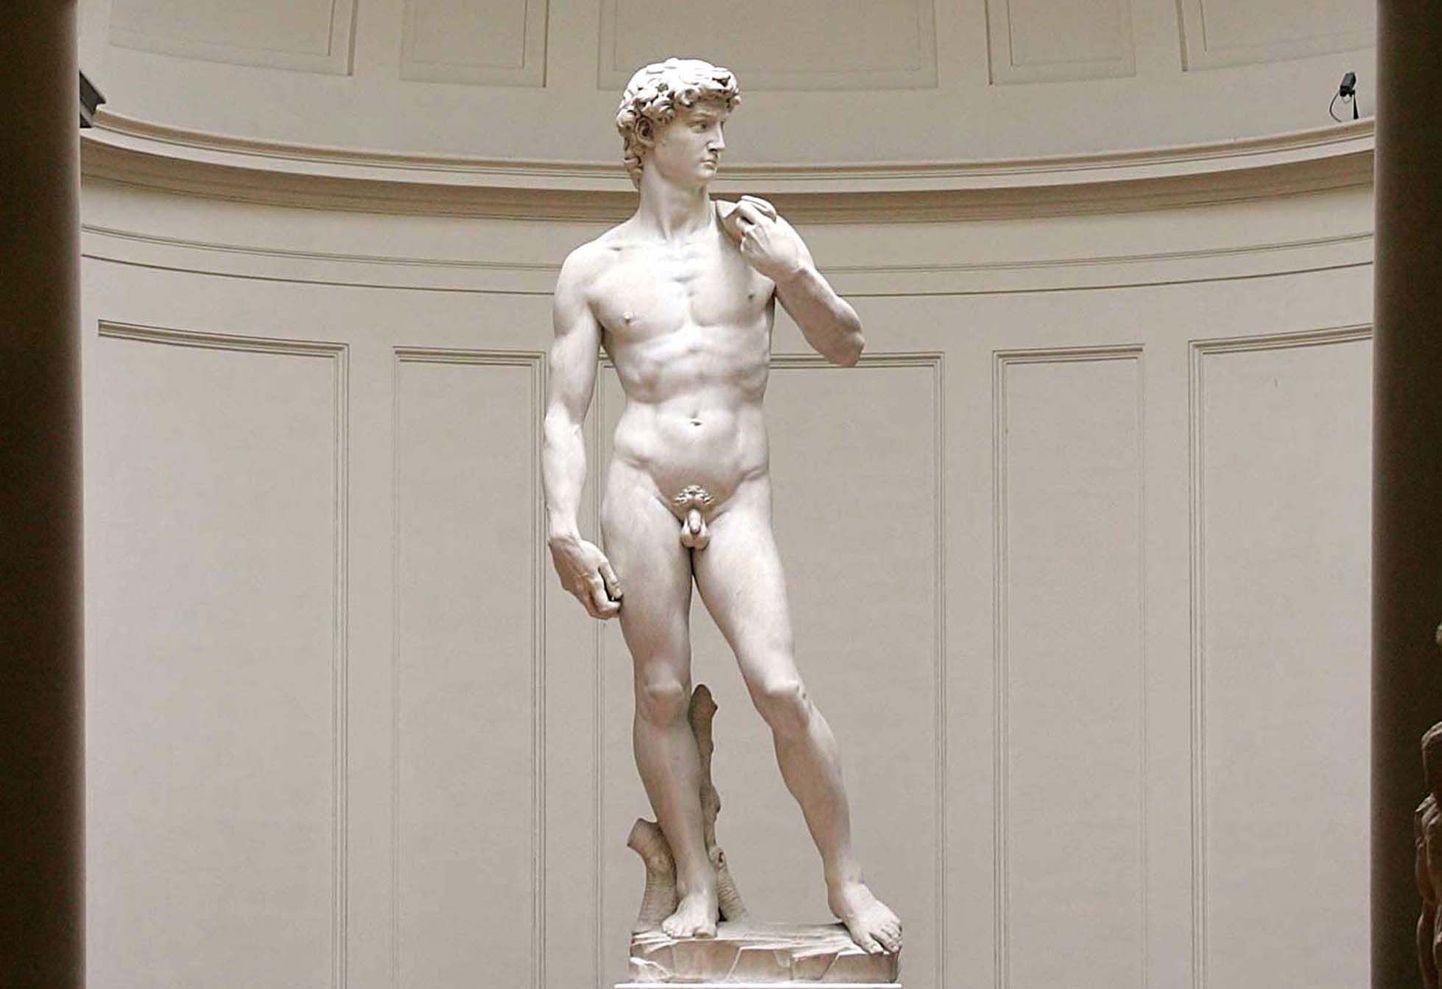 Itaalia riigil ja Firenze linnal tekkis vaidlus kuulsa Taaveti kuju pärast